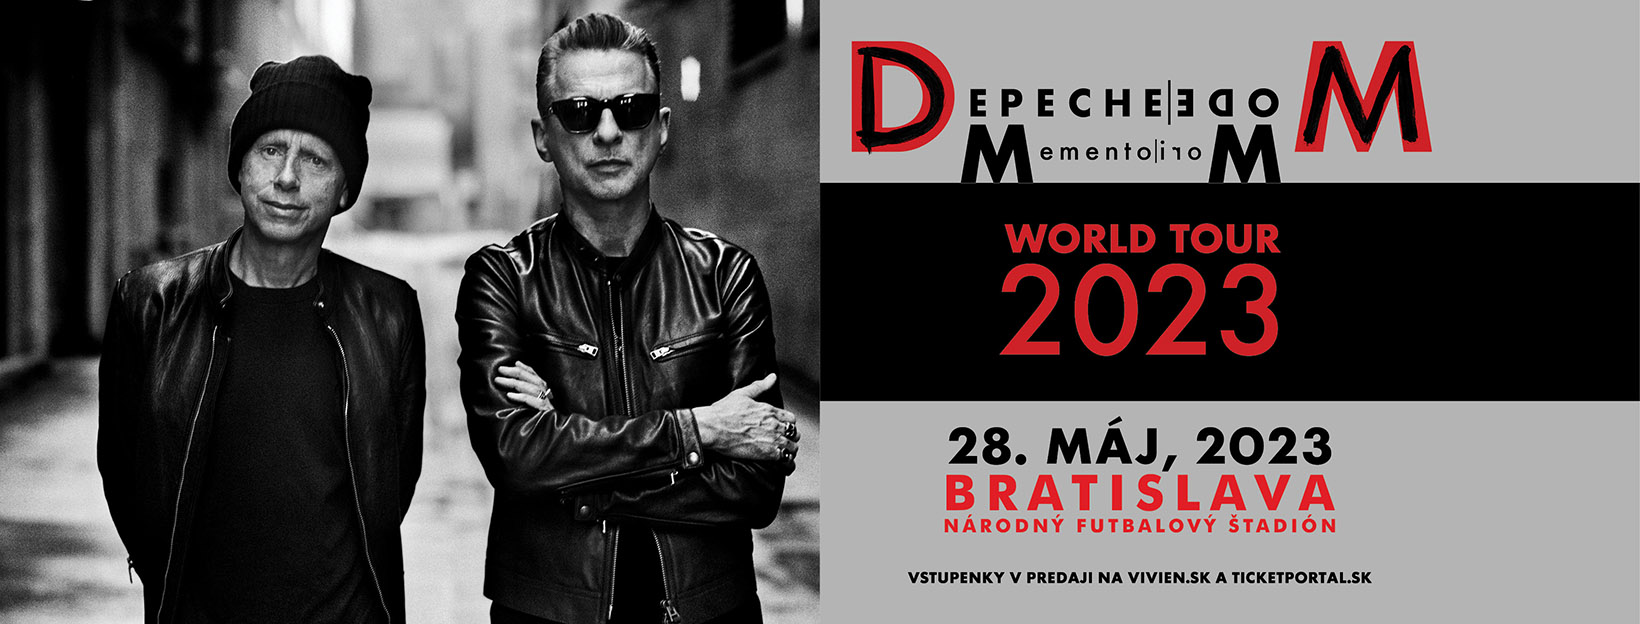 Skupina Depeche Mode po piatich rokoch ohlásila celosvetové turné